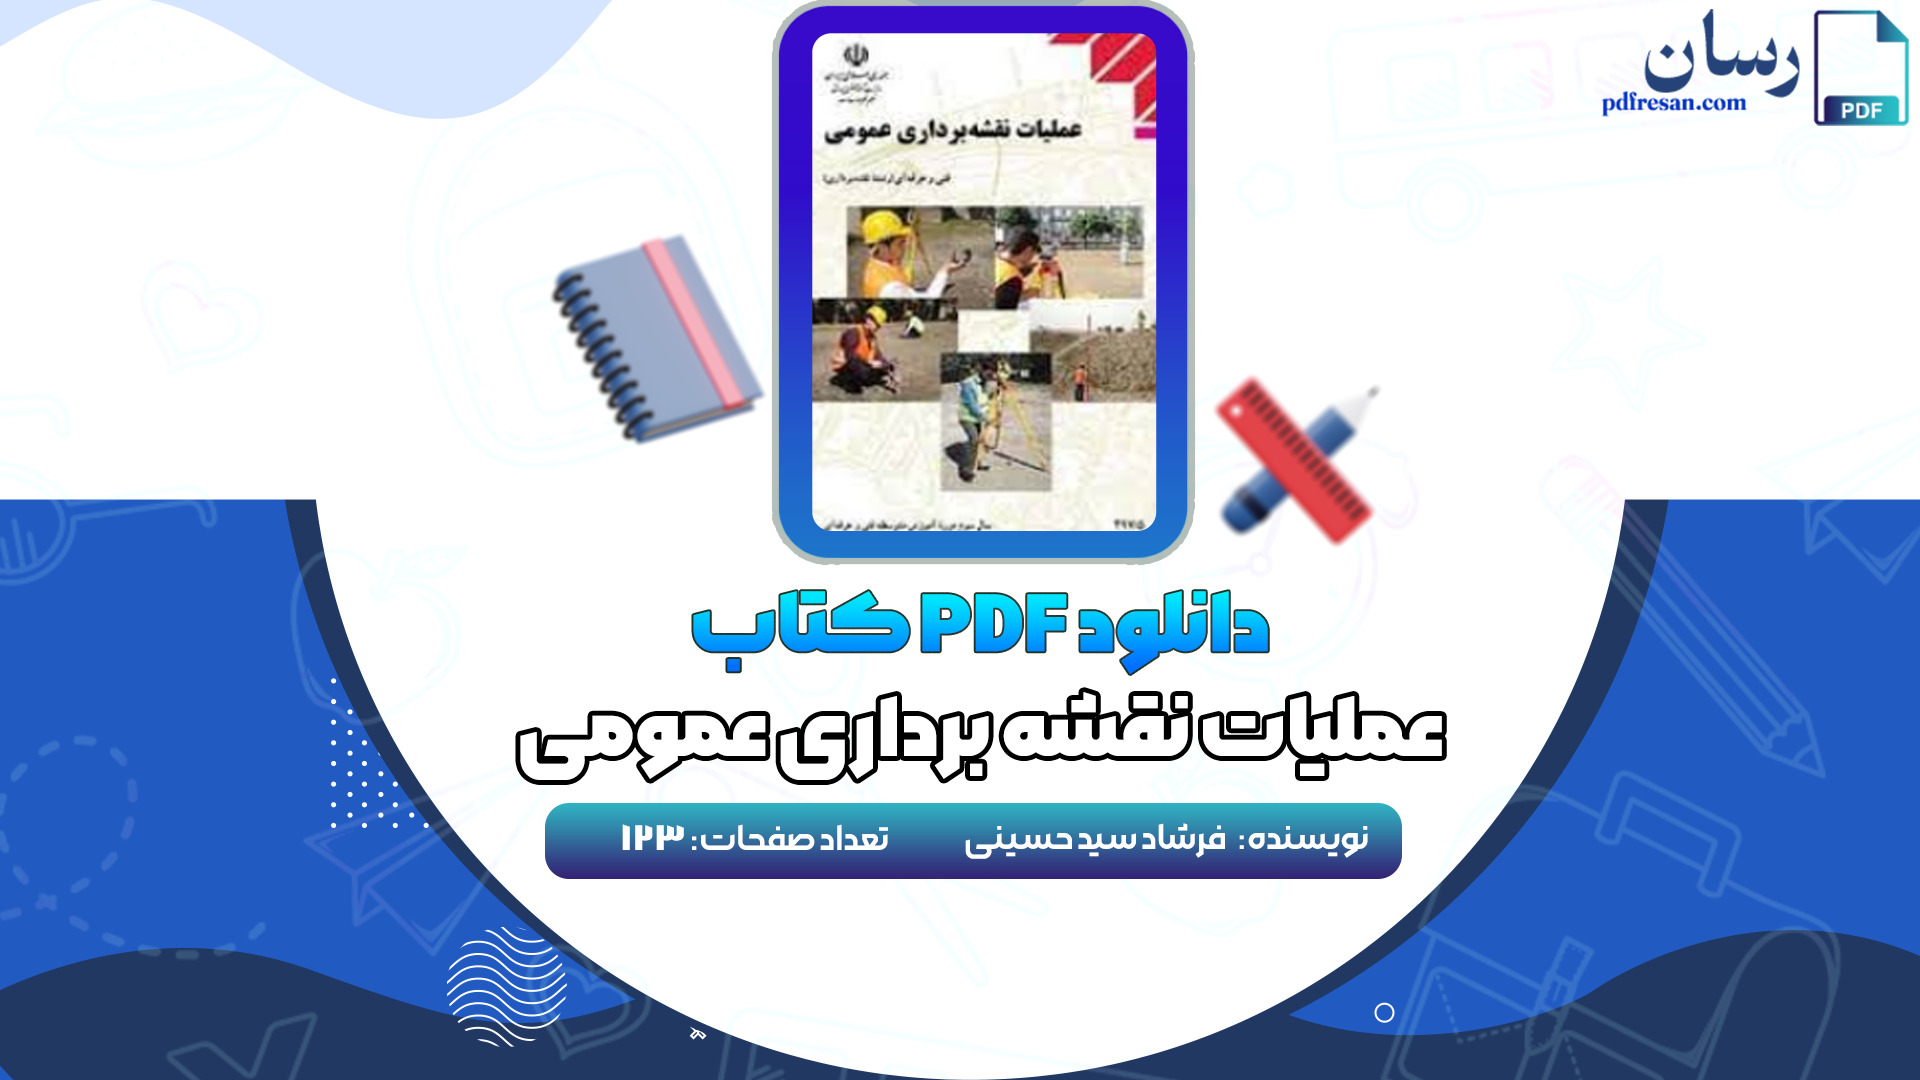 دانلود کتاب عملیات نقشه برداری عمومی فرشاد سید حسینی PDF